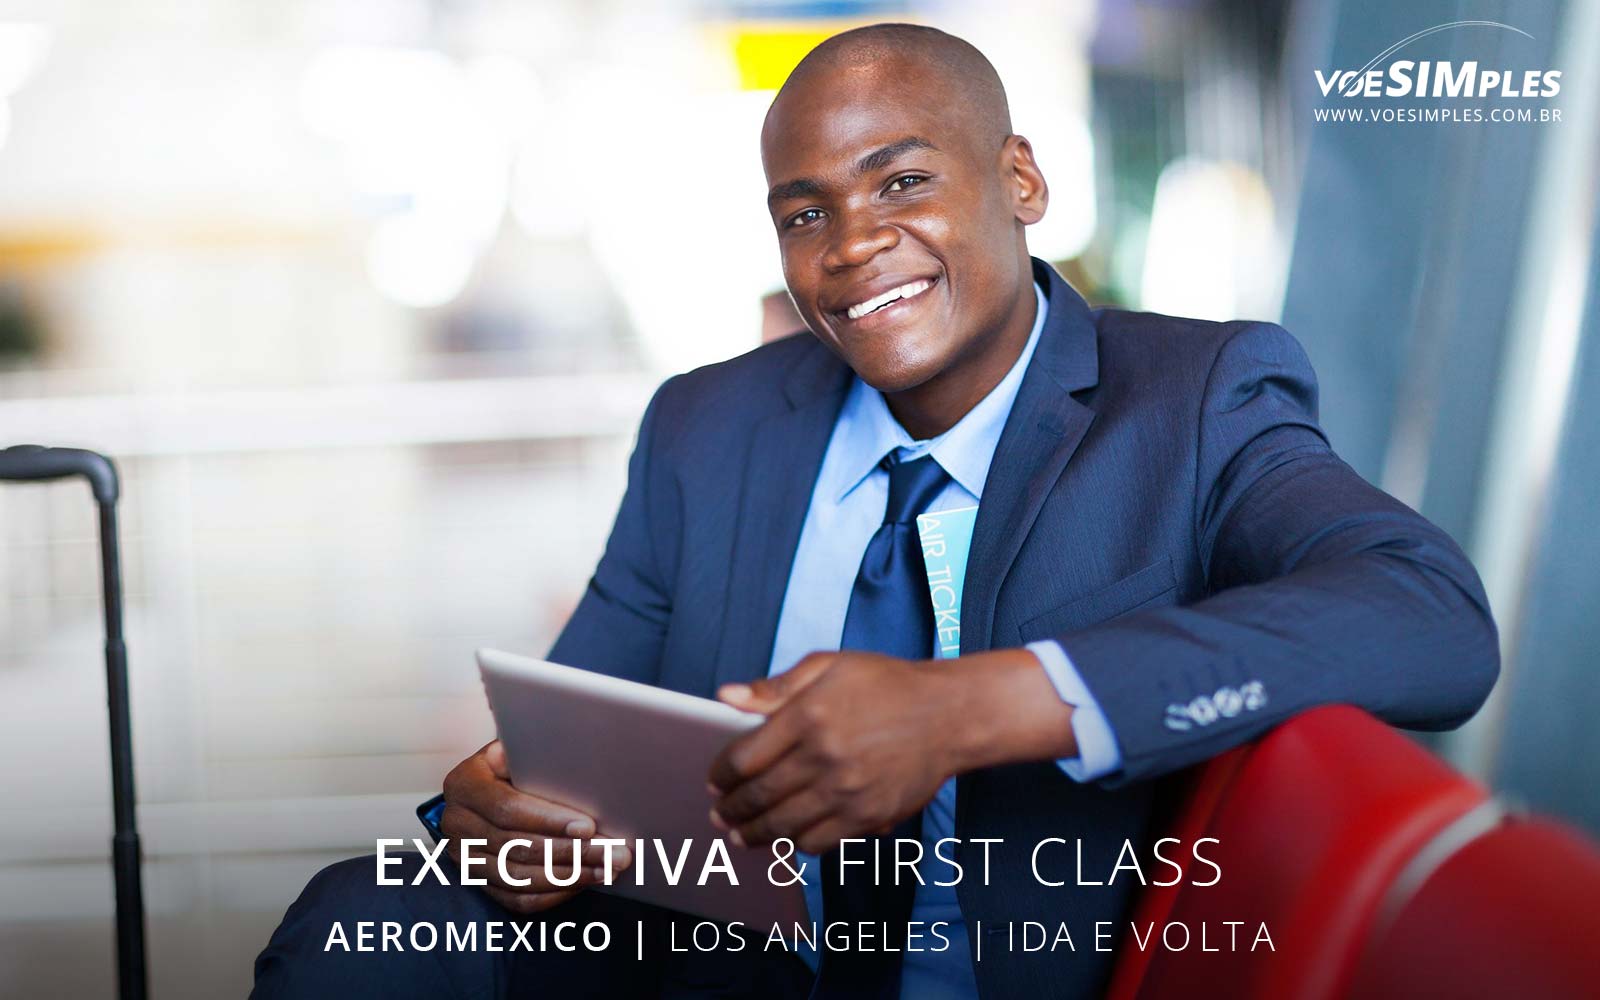 Passagem aérea executiva Aeromexico